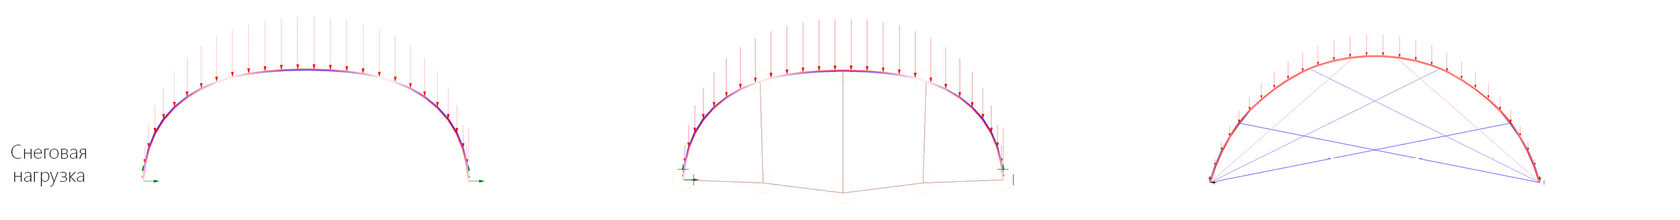 арки без затяжек, с одной затяжной и с лучевыми струнами. расчетная модель 